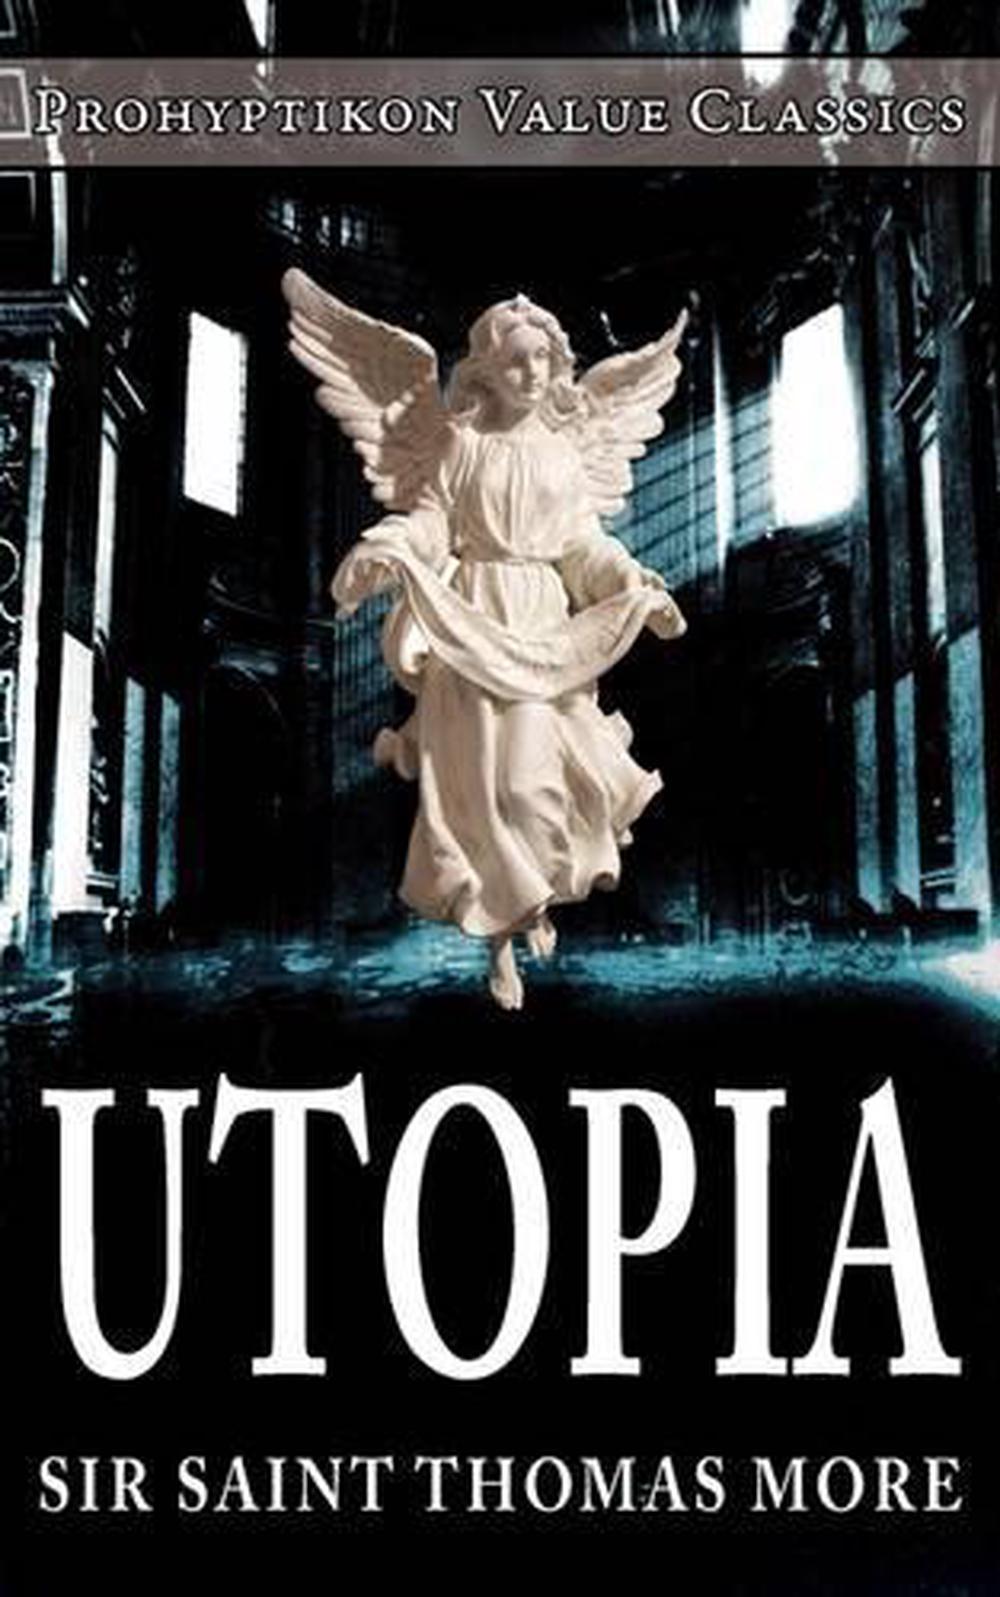 utopia thomas more penguin classics pdf